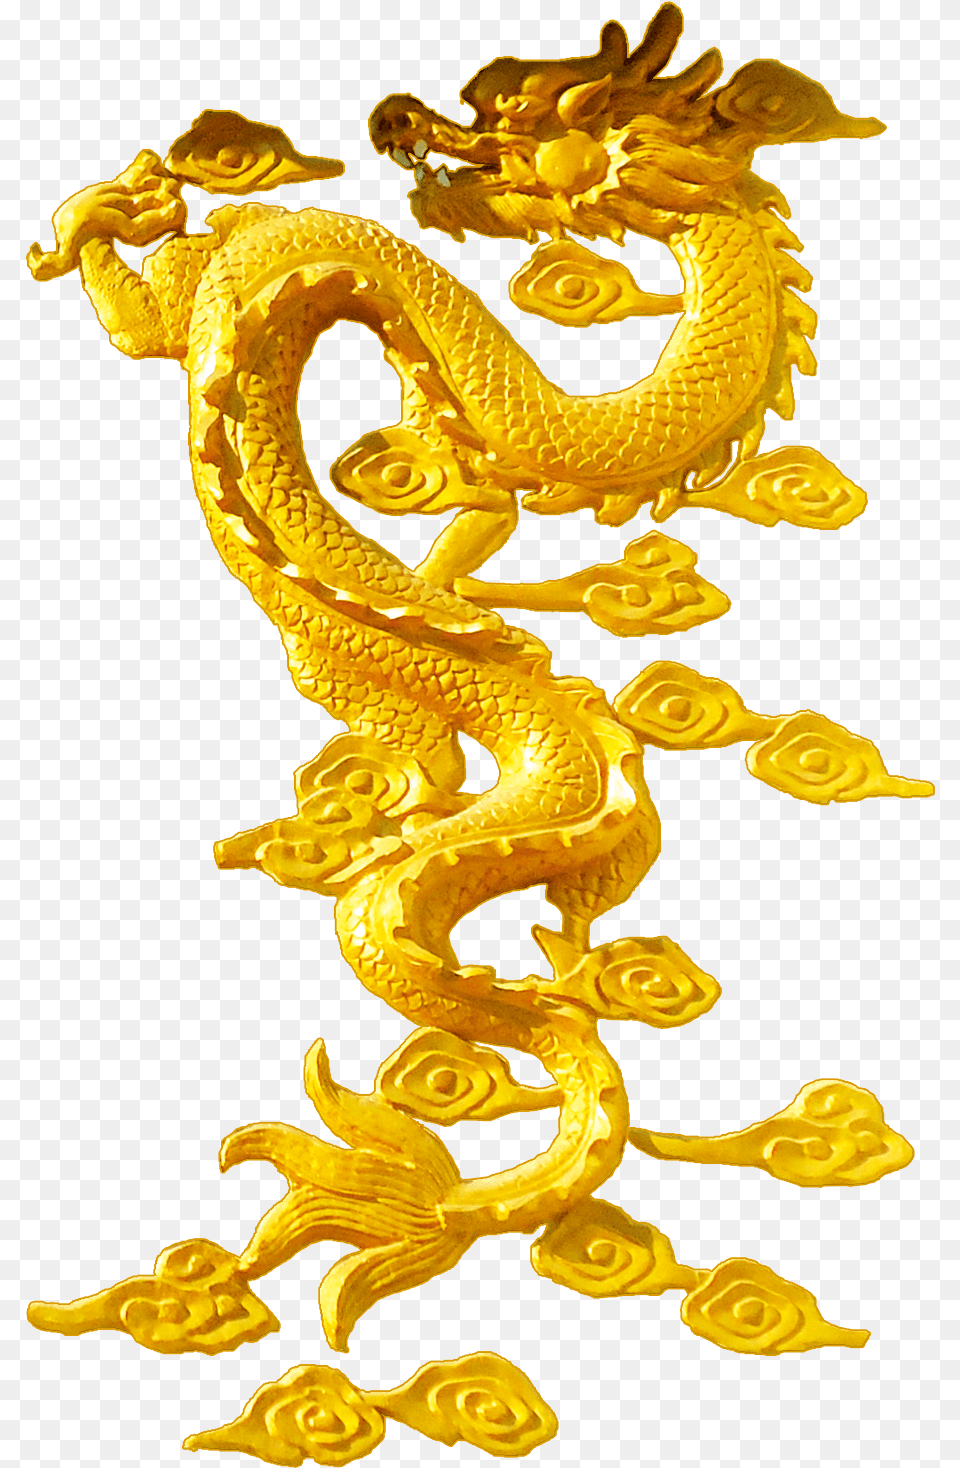 Chinese Dragon Golden Dragon Chinese Dragon Gold, Animal, Dinosaur, Reptile, Treasure Free Png Download